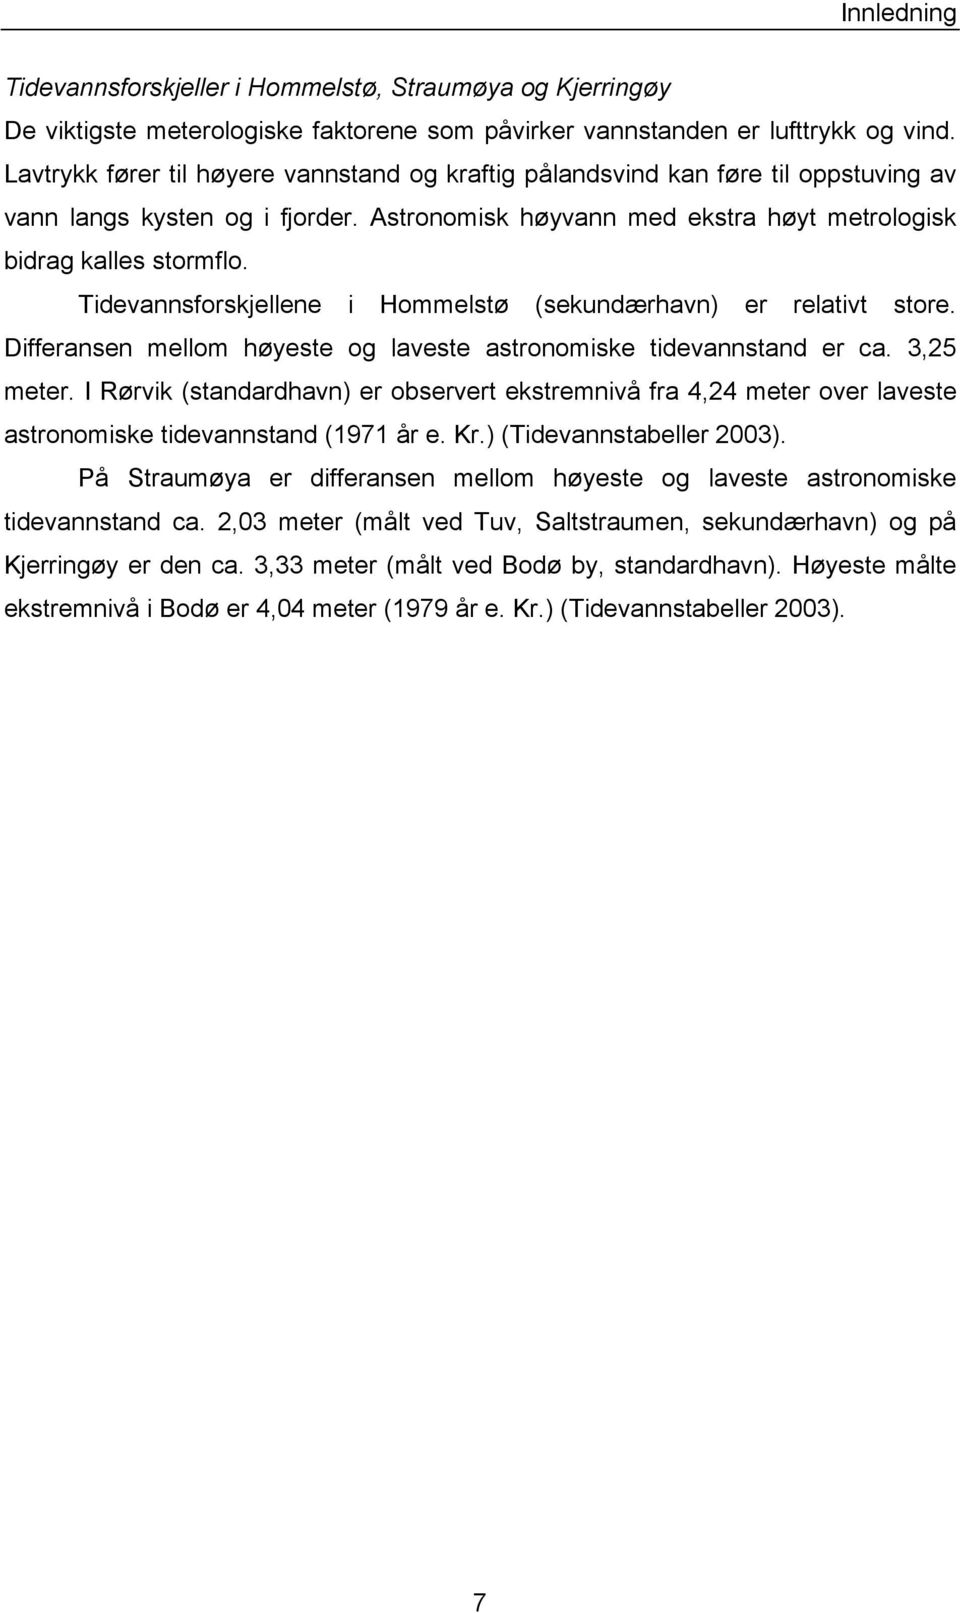 Tidevannsforskjellene i Hommelstø (sekundærhavn) er relativt store. Differansen mellom høyeste og laveste astronomiske tidevannstand er ca. 3,25 meter.